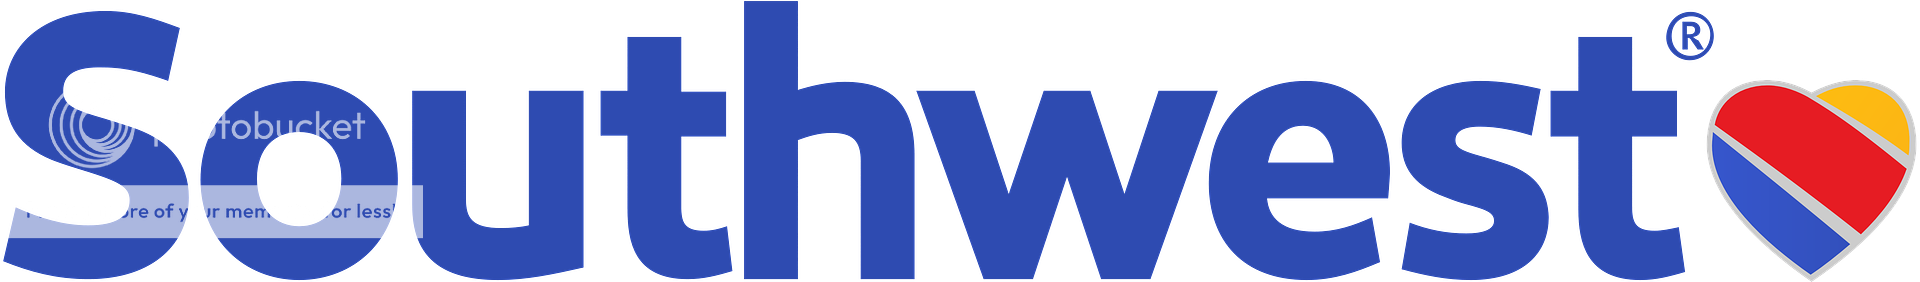 southwest logo